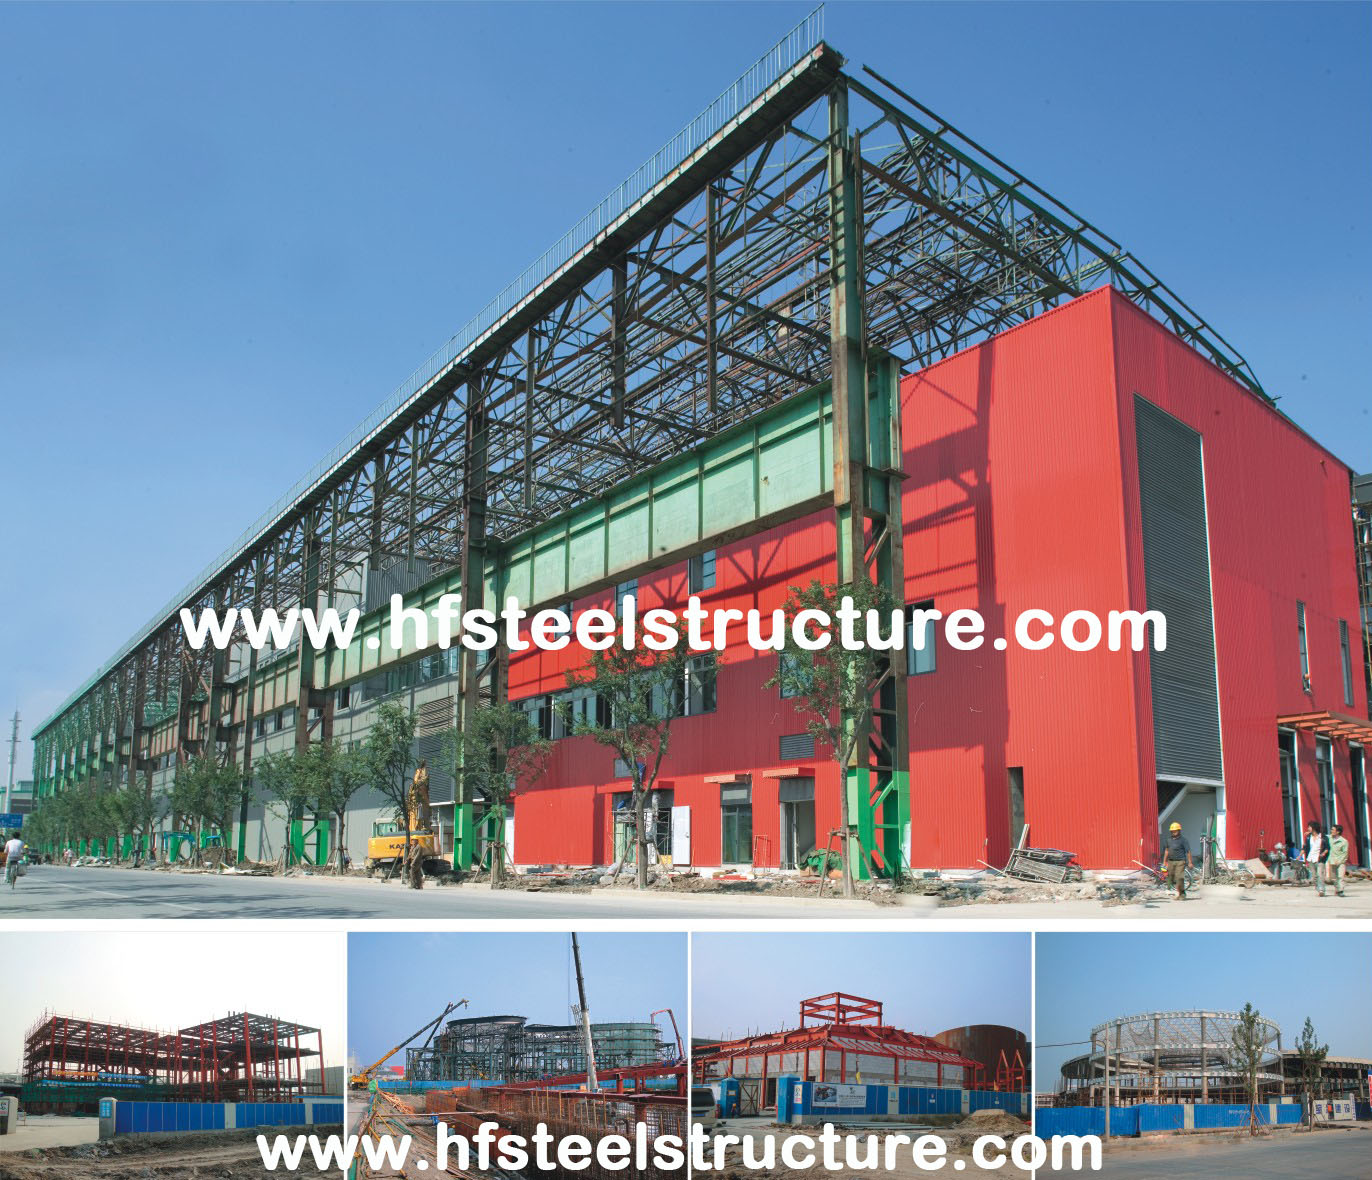 조립식으로 만들어진 금속 및 /Lightweight 전통적인 문맥 구조 상업적인 강철 건물